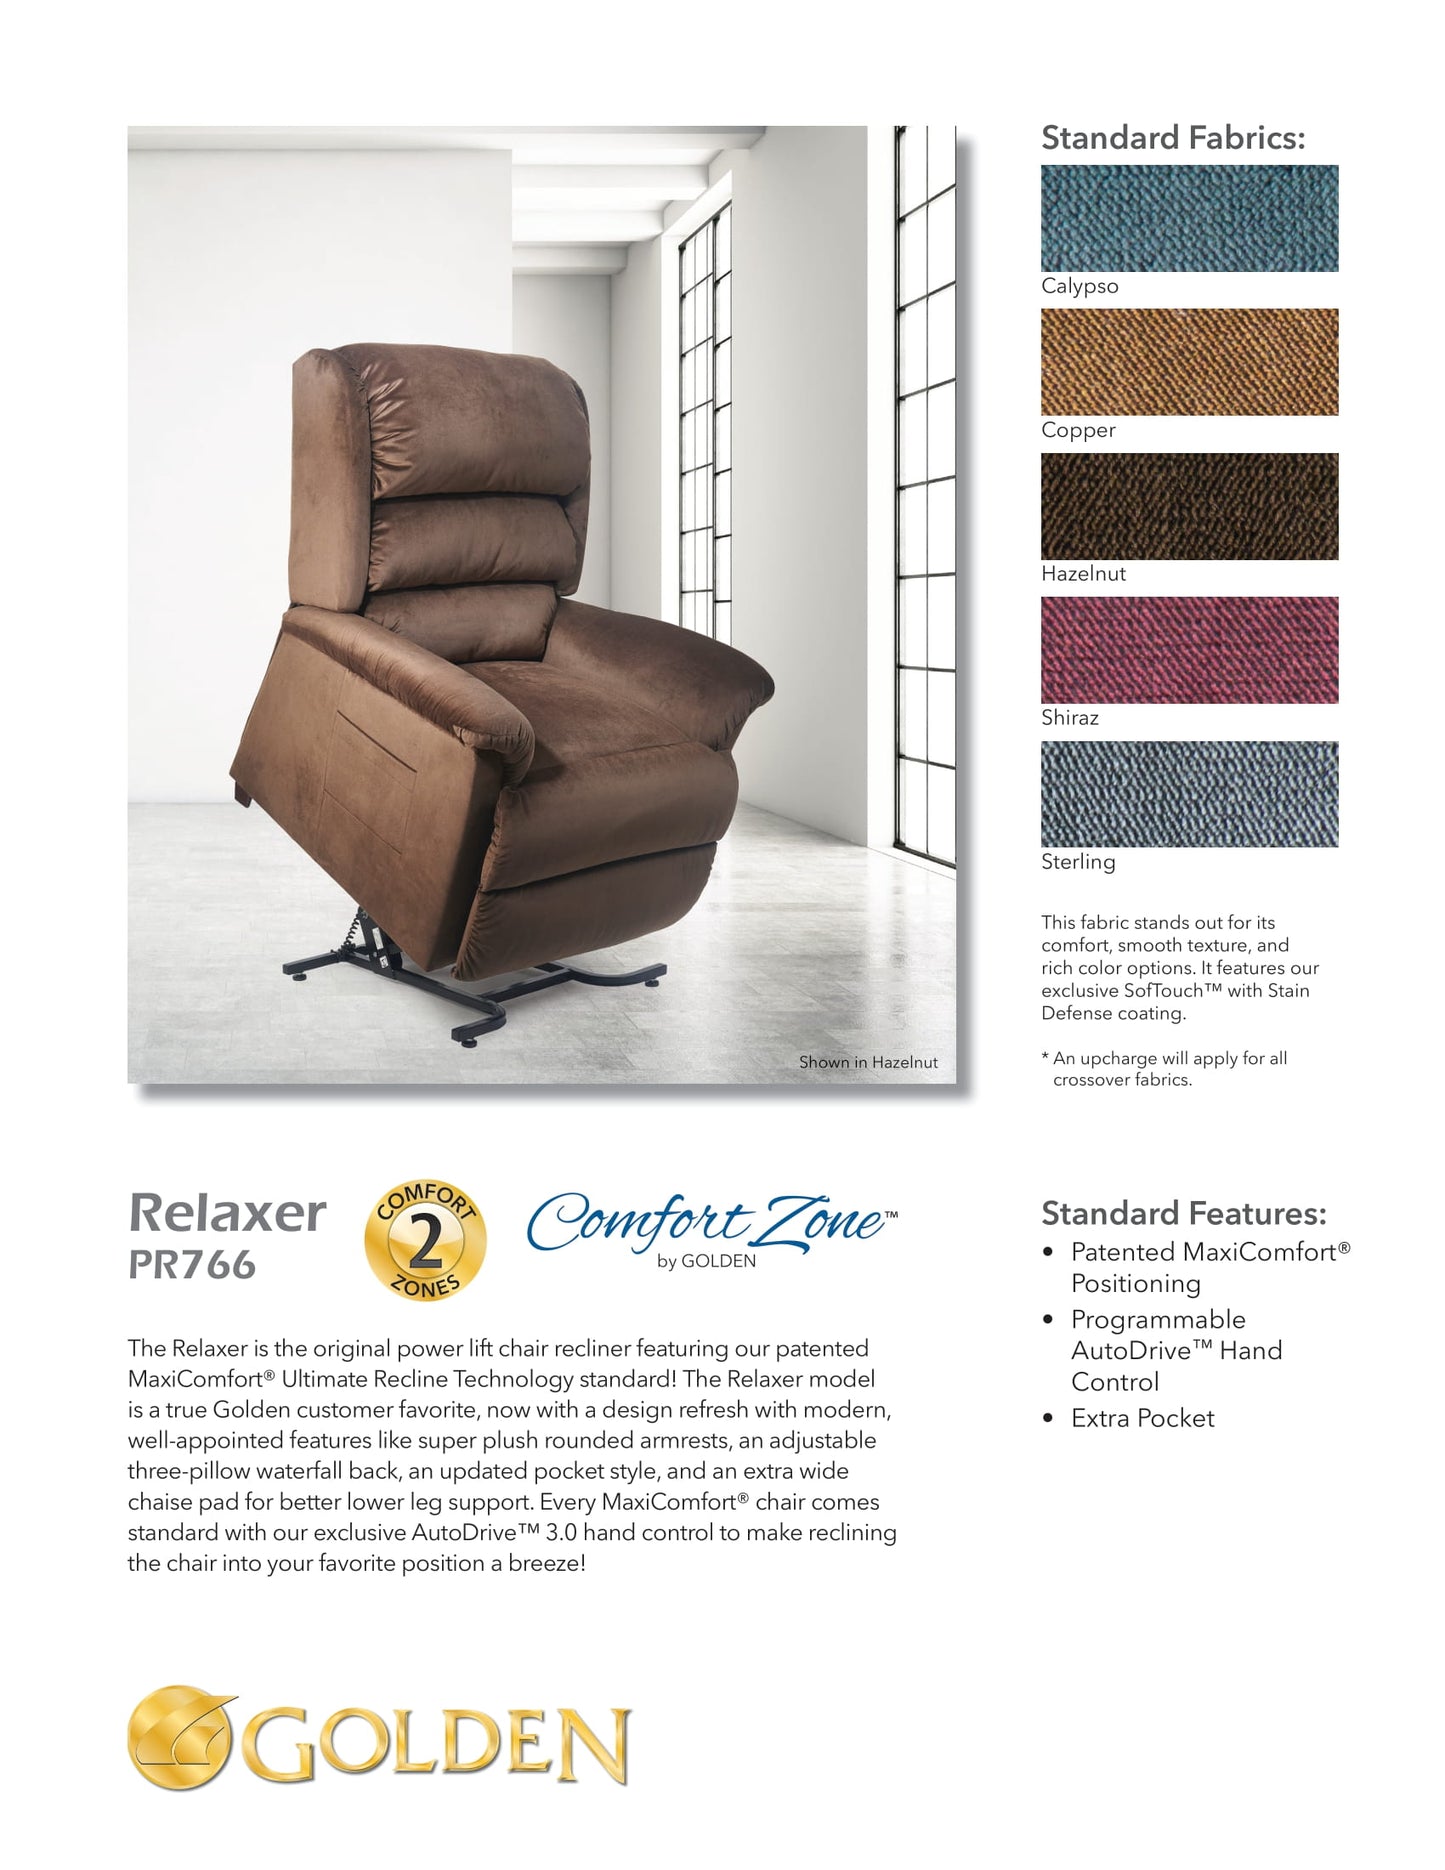 Relaxer Power Lift Chair Recliner